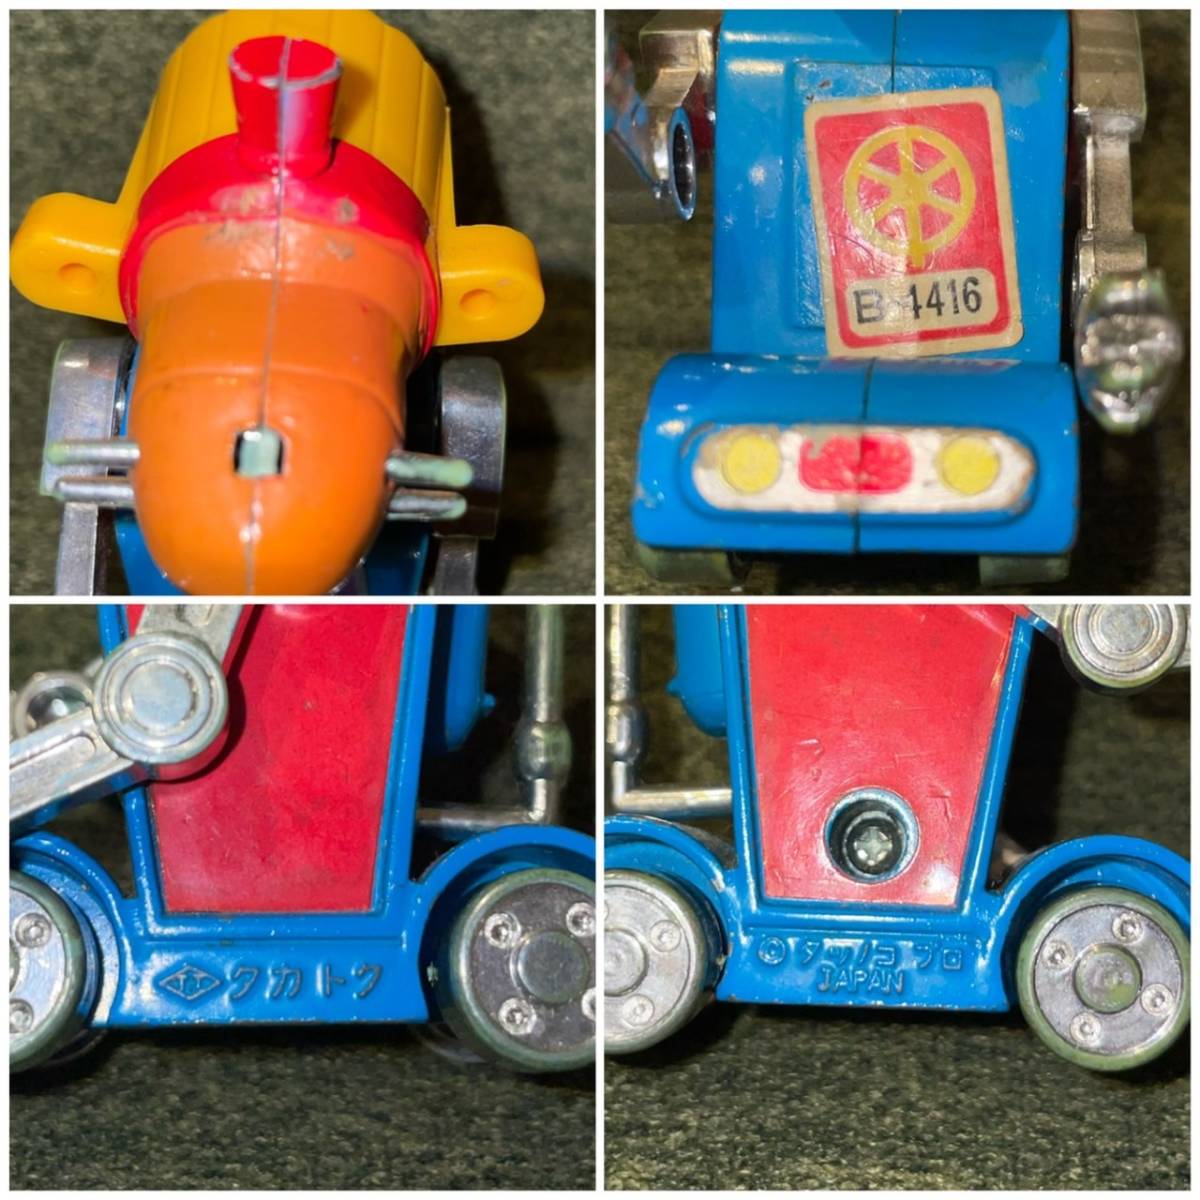 [No.446] жестяная пластина Chogokin робот. . Chan takatokto стул zenda man zenda- лев 2 body комплект retro игрушка подлинная вещь текущее состояние товар 